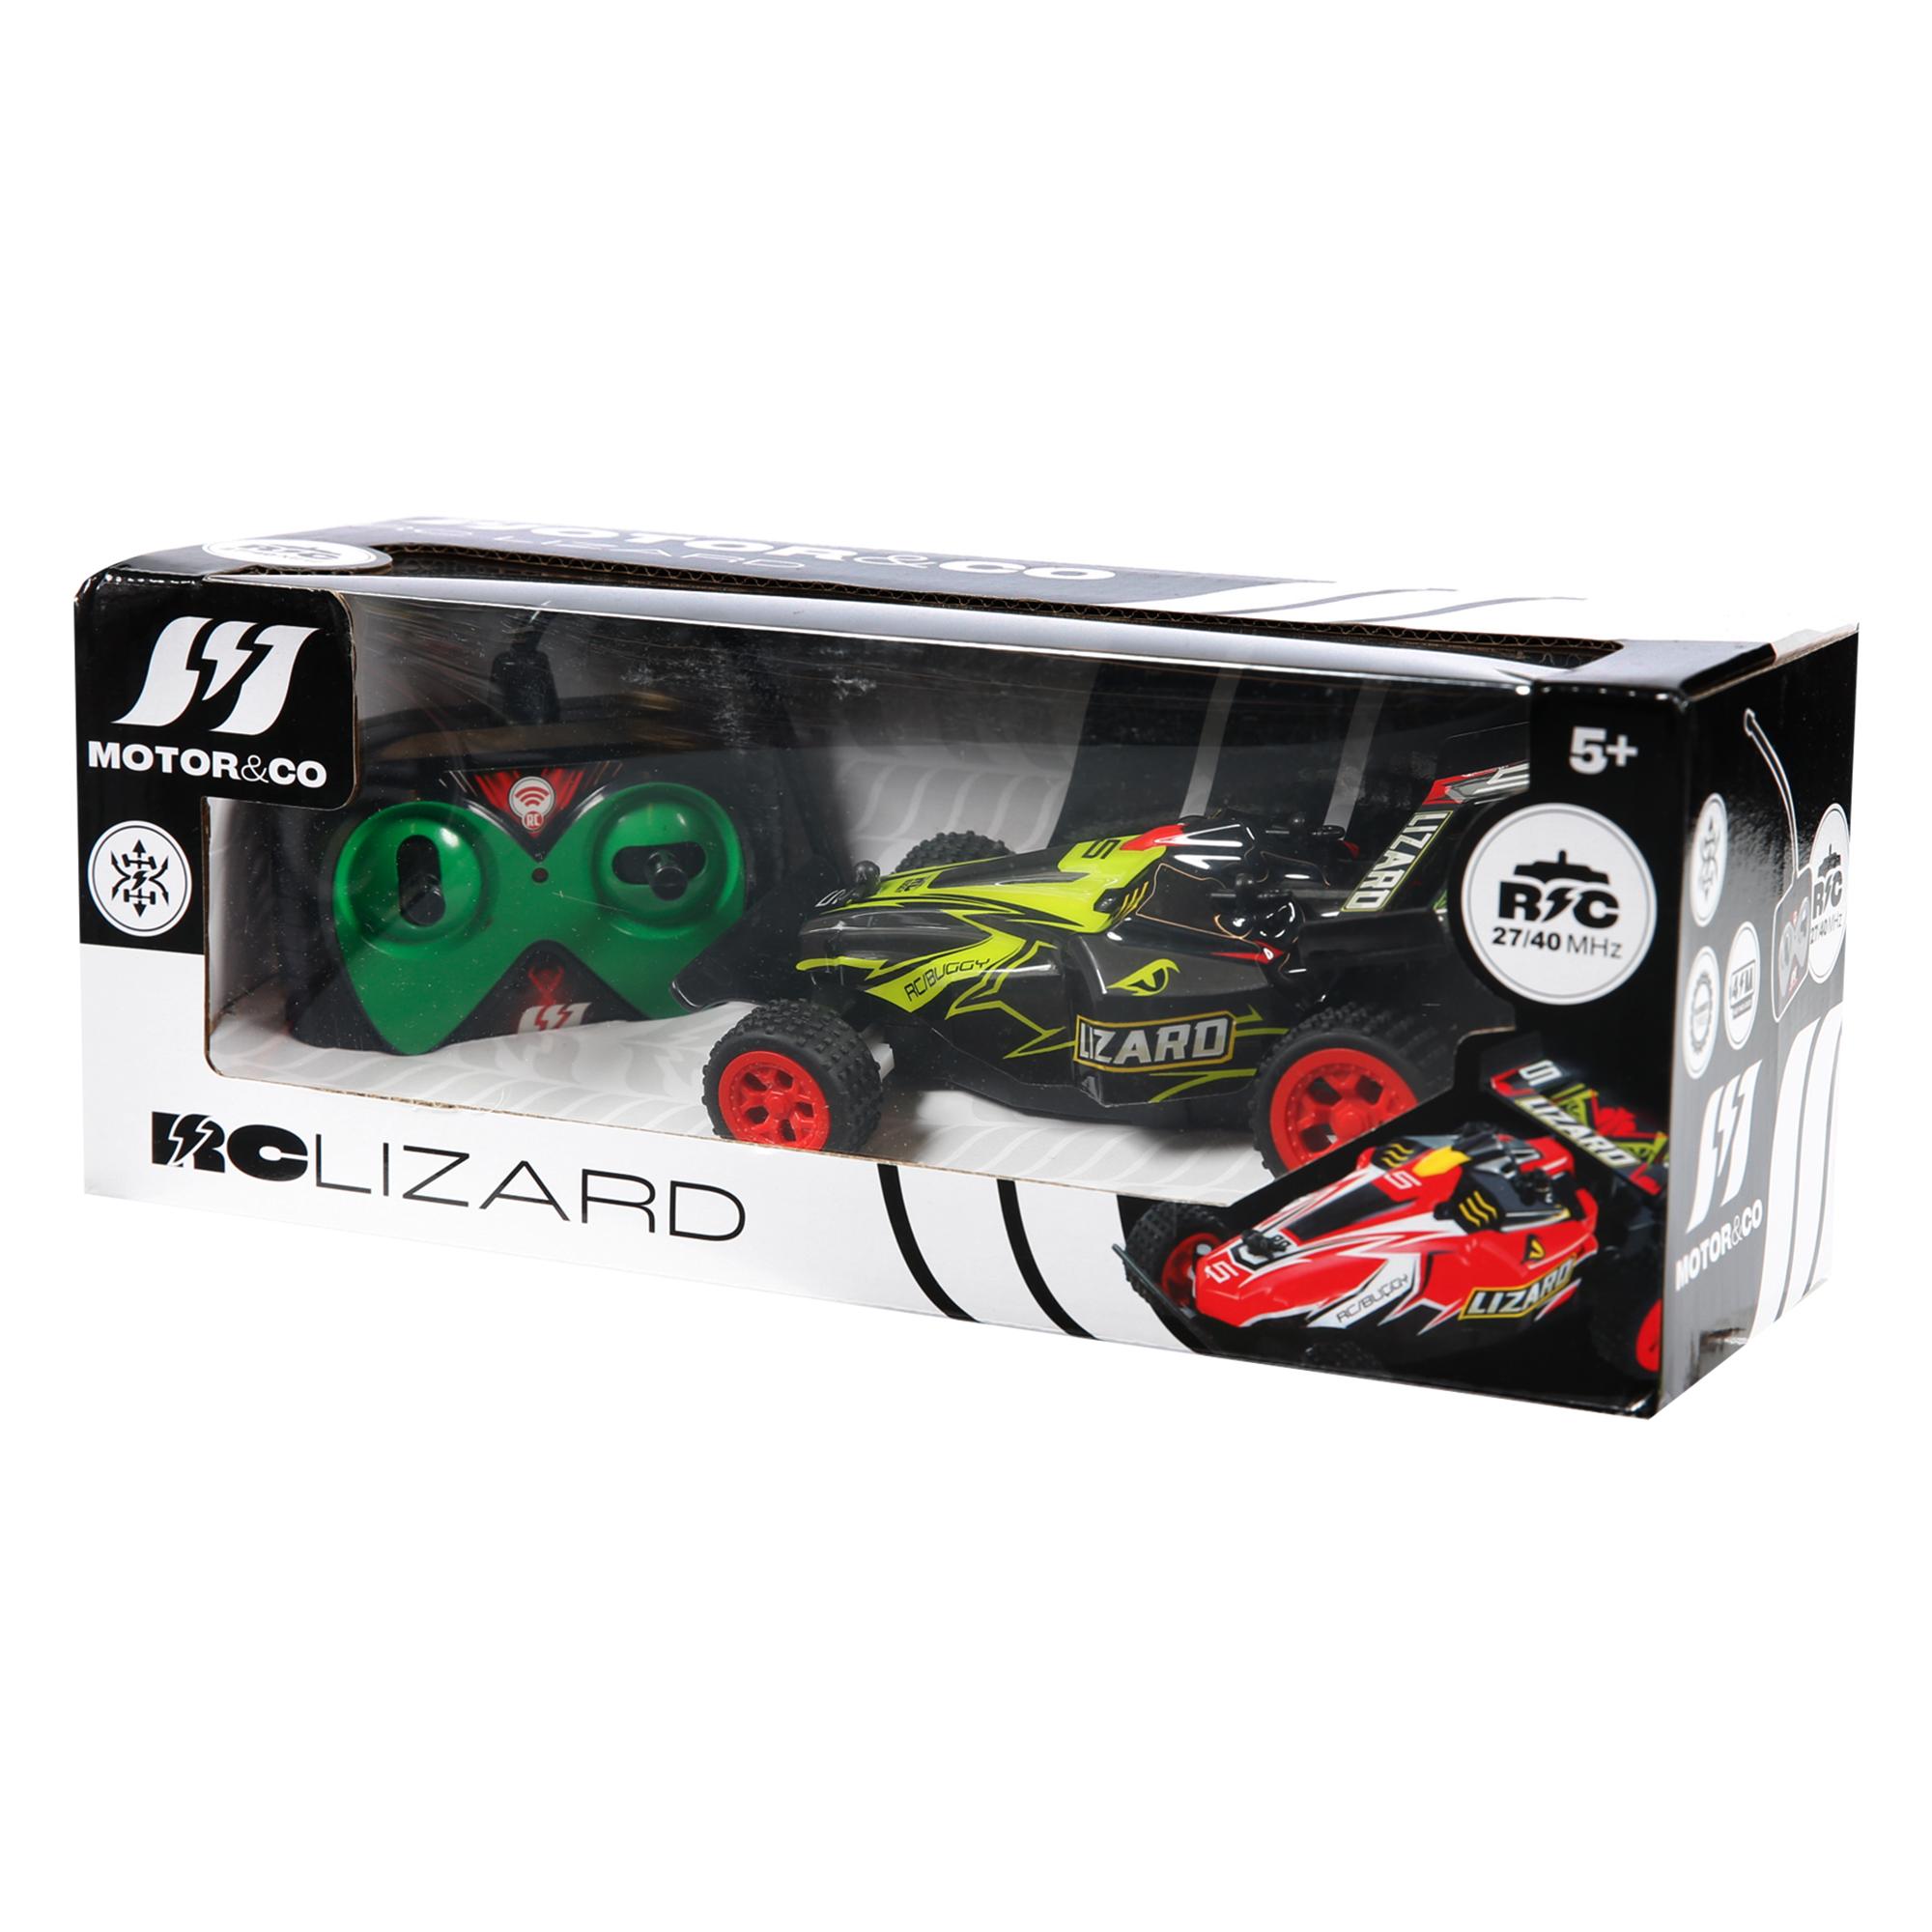 R/c lizard - MOTOR & CO.